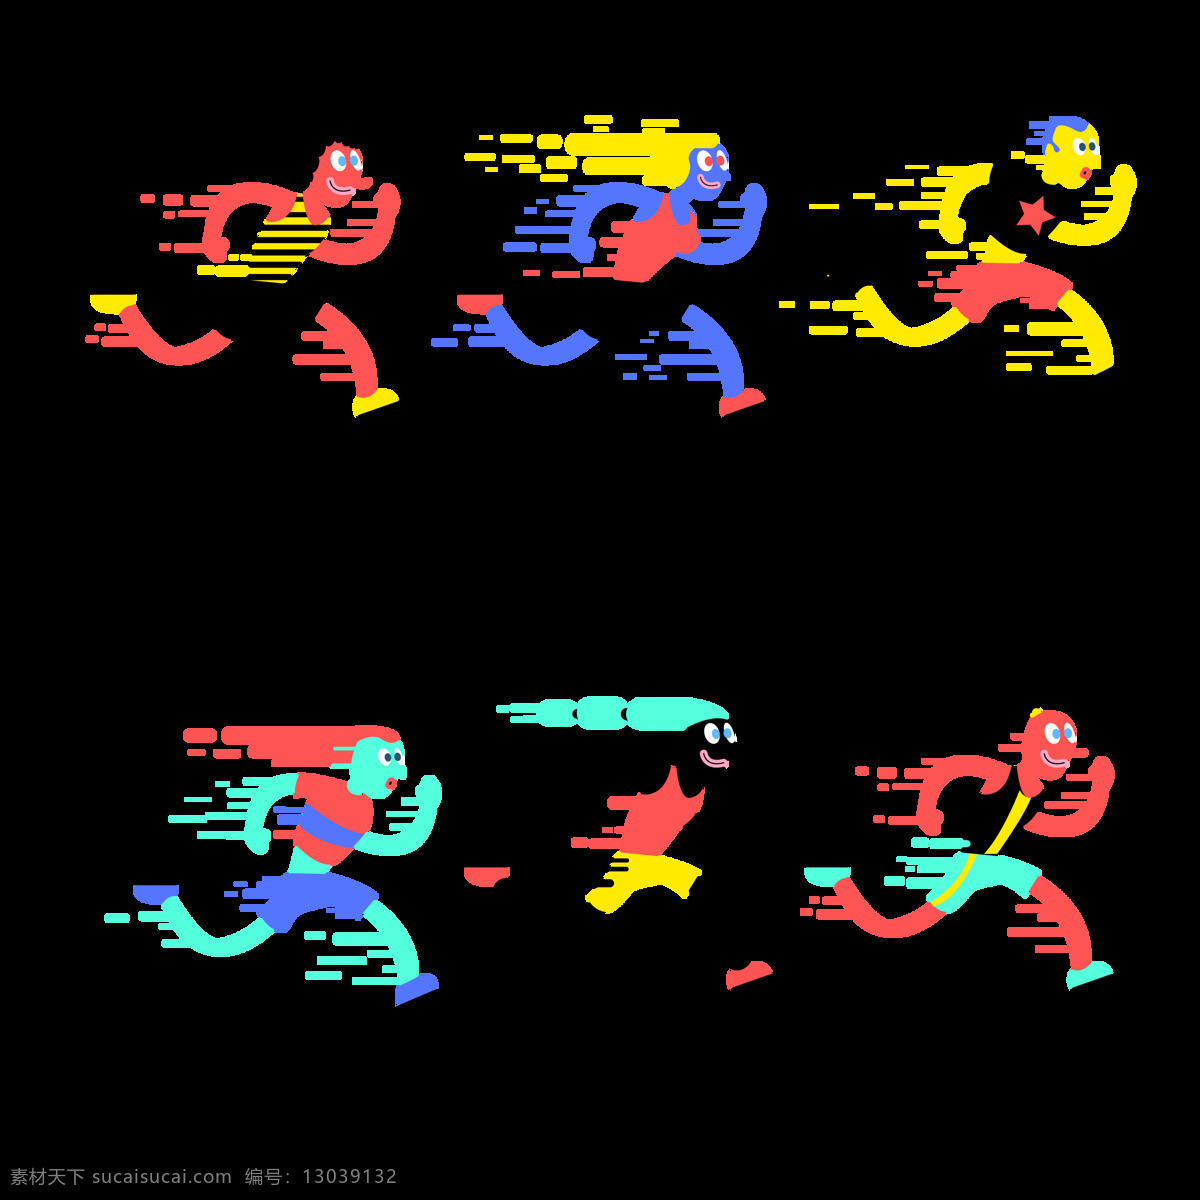 彩色 跑步 图形 免 抠 透明 图 层 卡通奔跑的人 运动会 励志 狂跑 起跑 狂欢人群 奔跑吧少年 体育素材 奔跑剪影 跑步的人 奔跑素材 运动人物 卡通运动 跑步人物